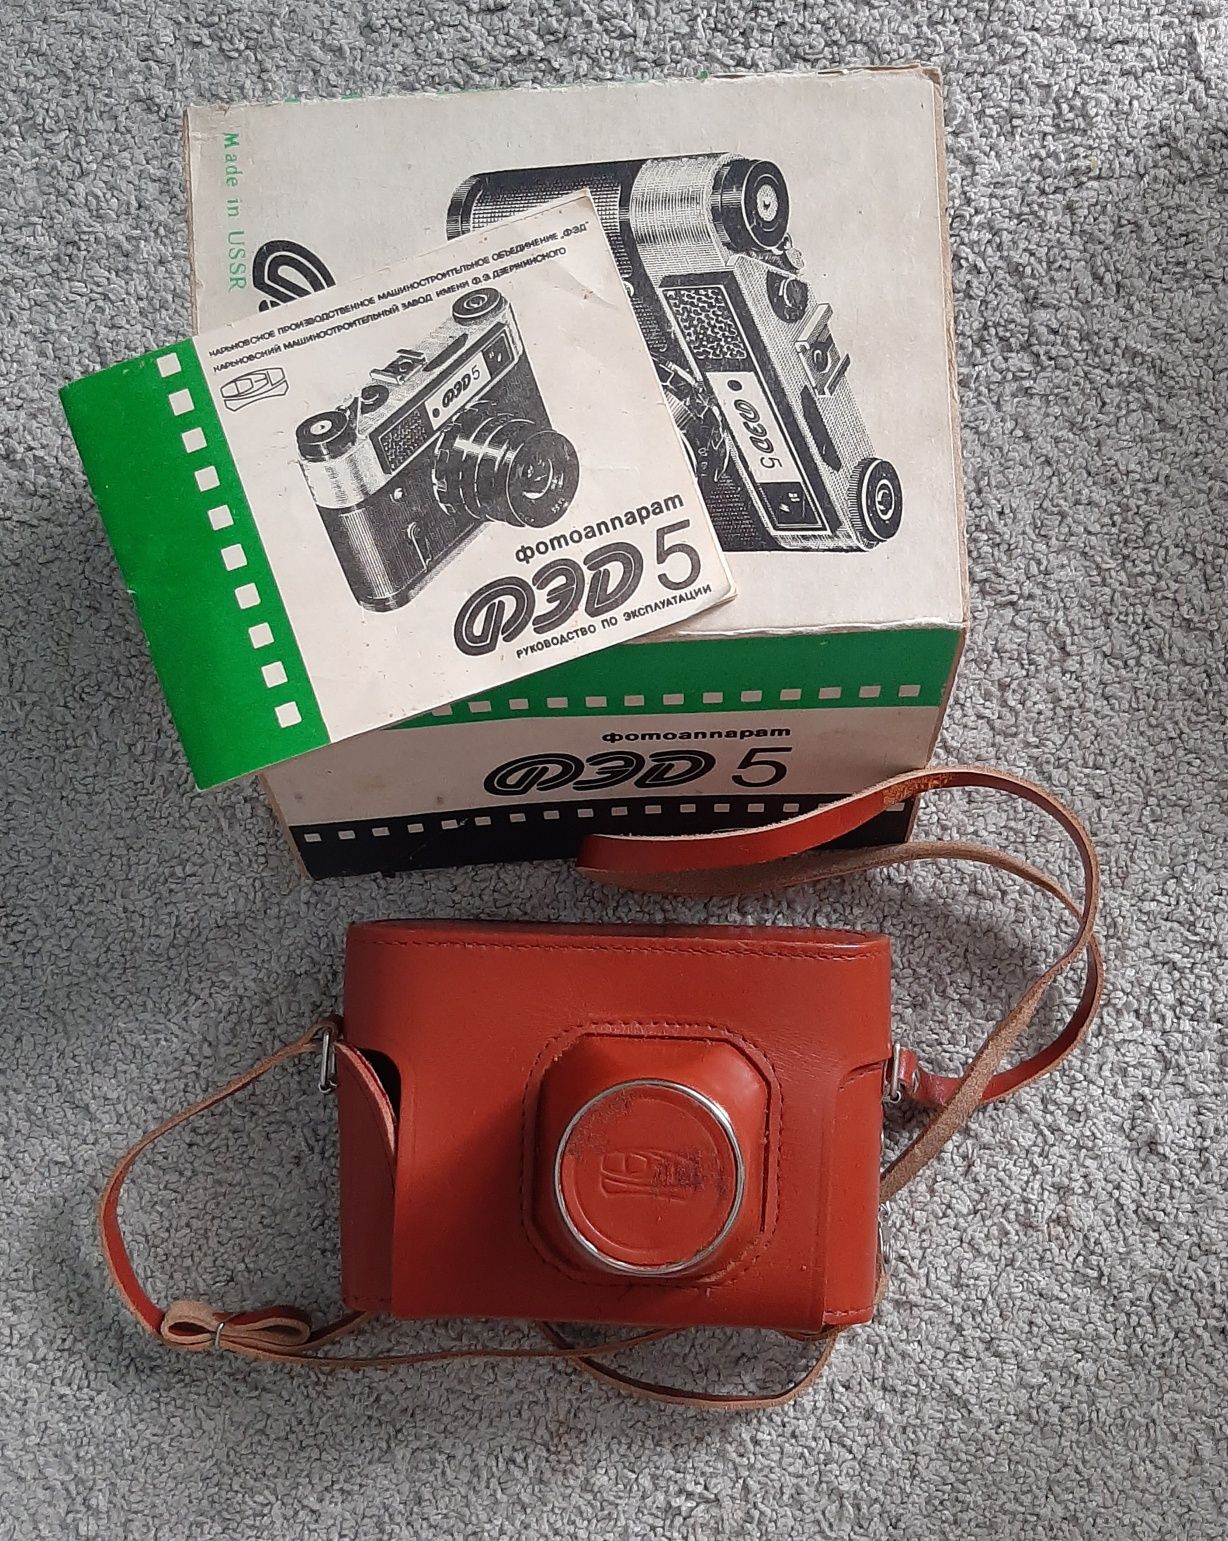 Продам новый фотоаппарат ФЭД 5 ,1989г.в.